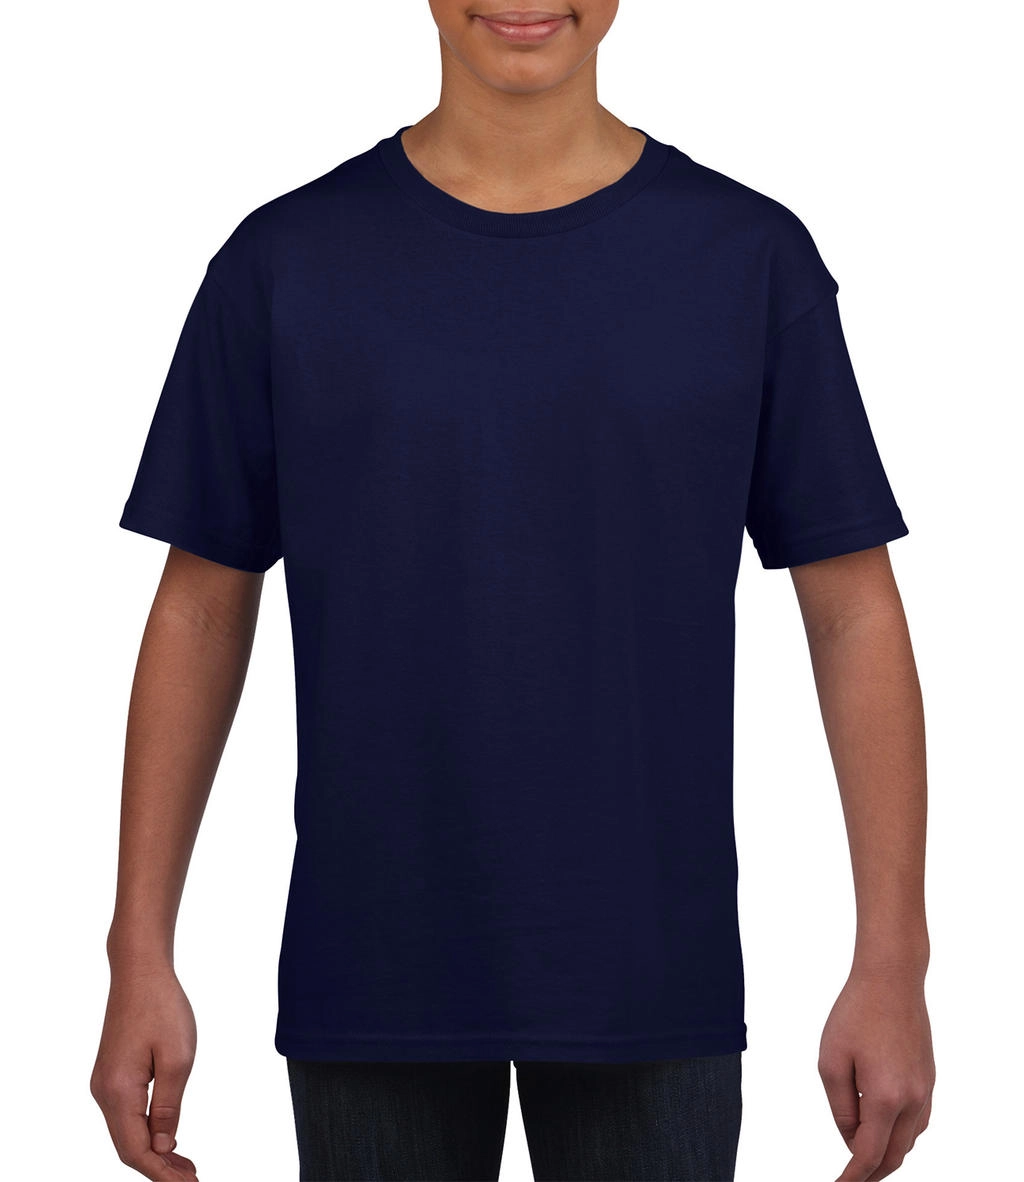 Softstyle® Youth T-Shirt zum Besticken und Bedrucken in der Farbe Cobalt mit Ihren Logo, Schriftzug oder Motiv.